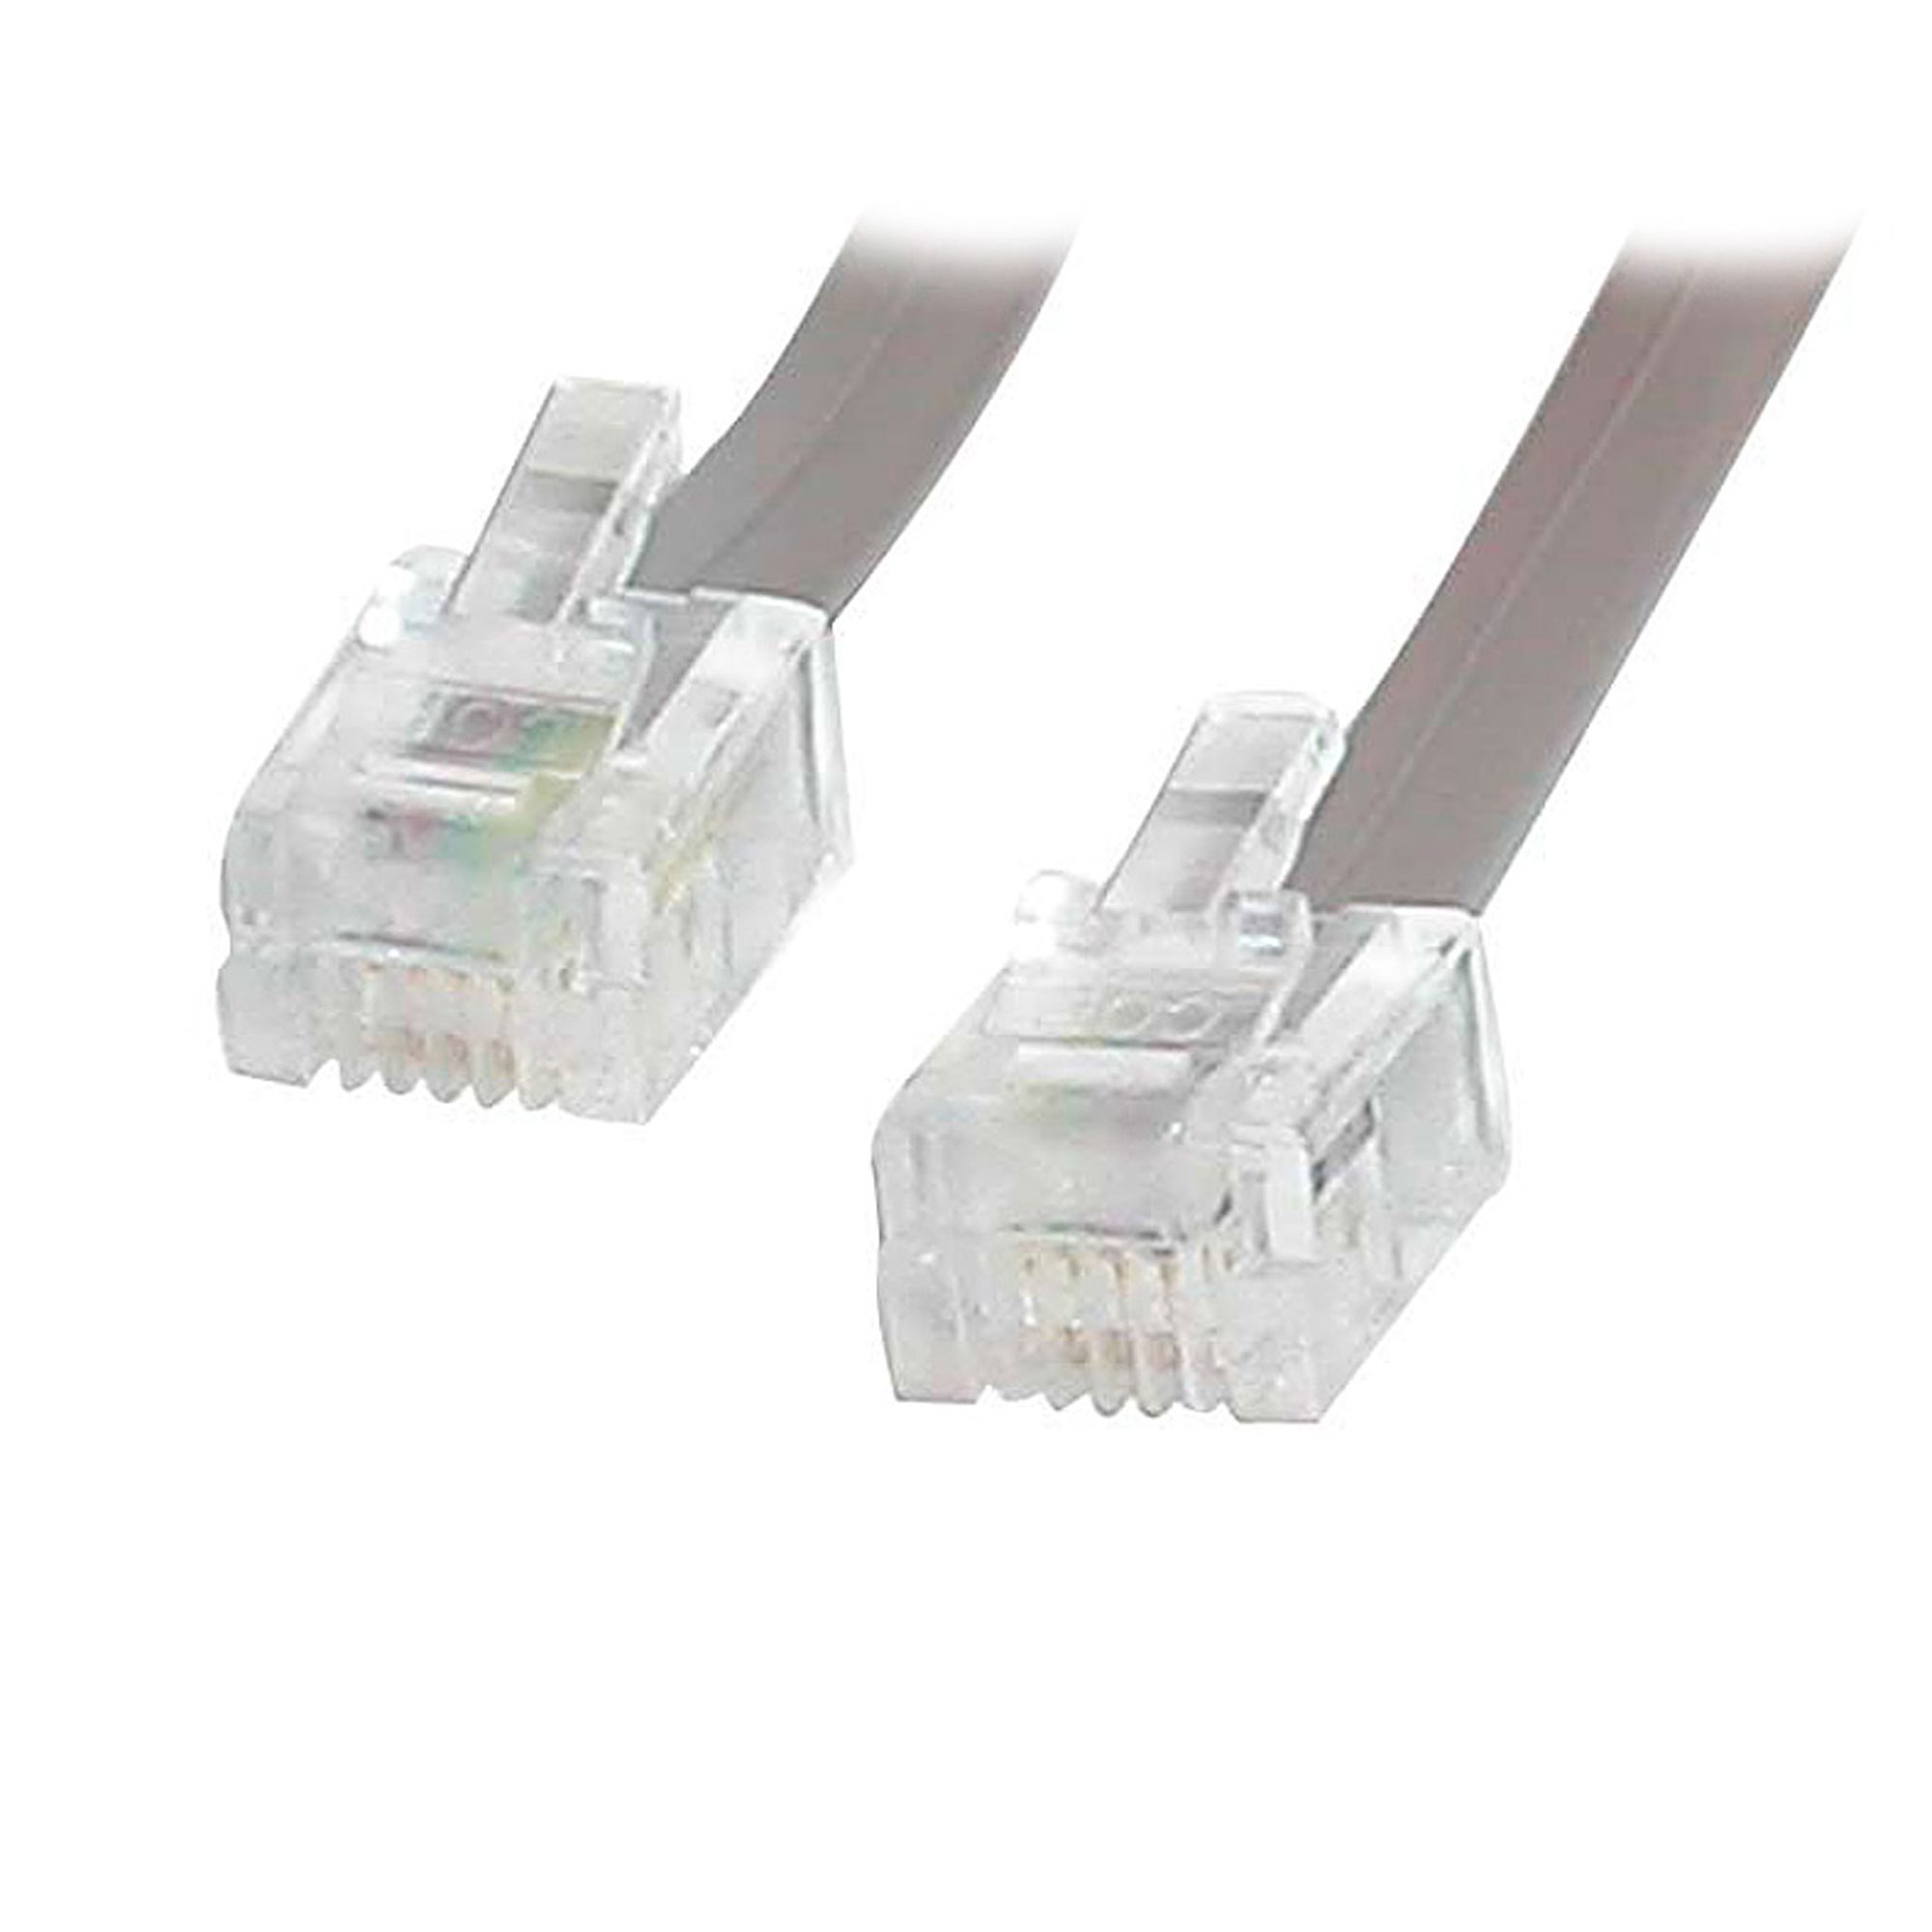 câble téléphone rj11-rj45 - Connectic Systems